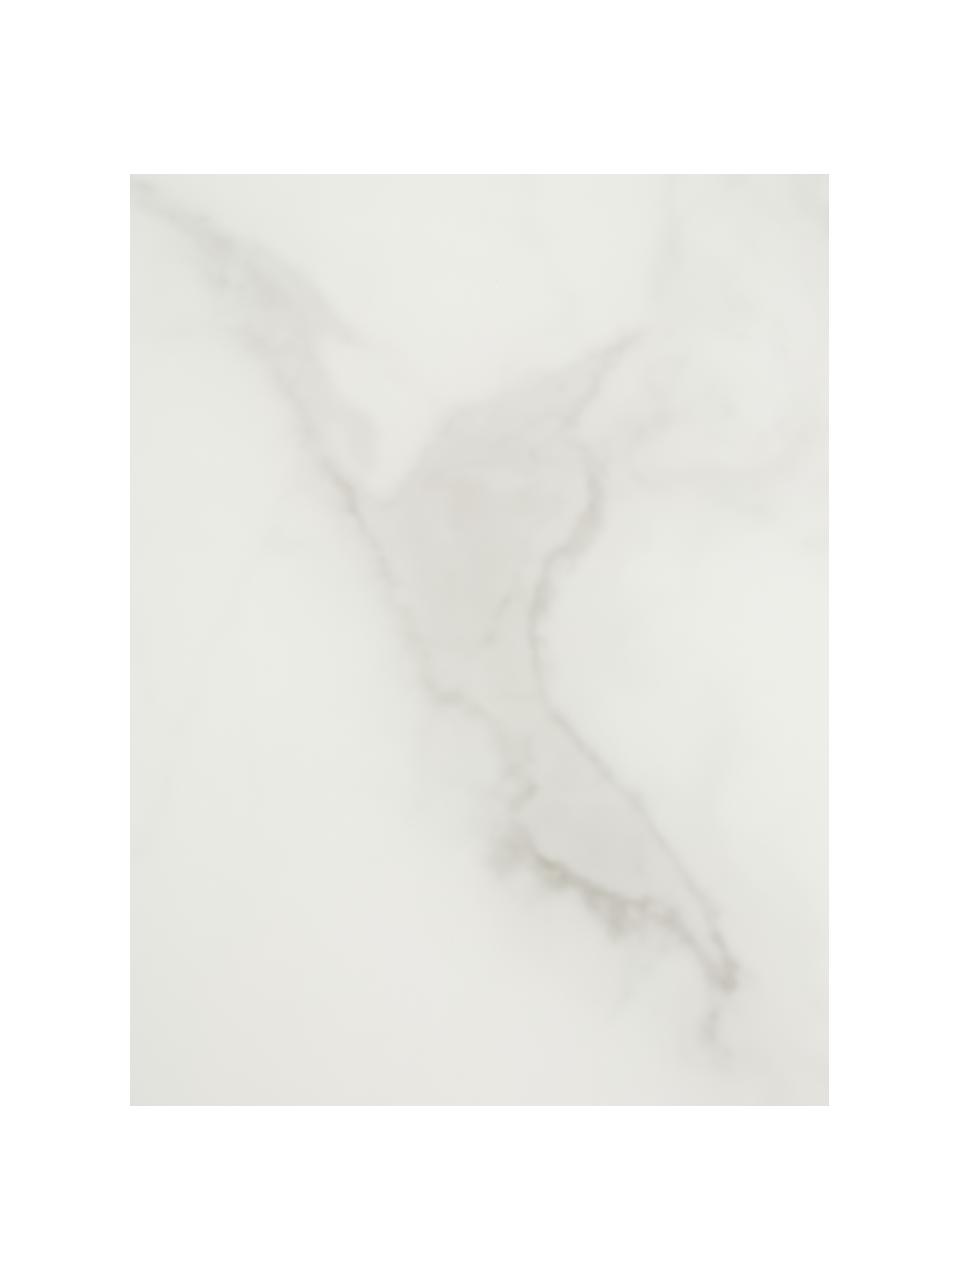 Runder Couchtisch Antigua mit Glasplatte in Marmor-Optik, Tischplatte: Glas, matt bedruckt, Gestell: Stahl, verchromt, Marmor-Optik Weiß, Chromfarben, Ø 80 cm